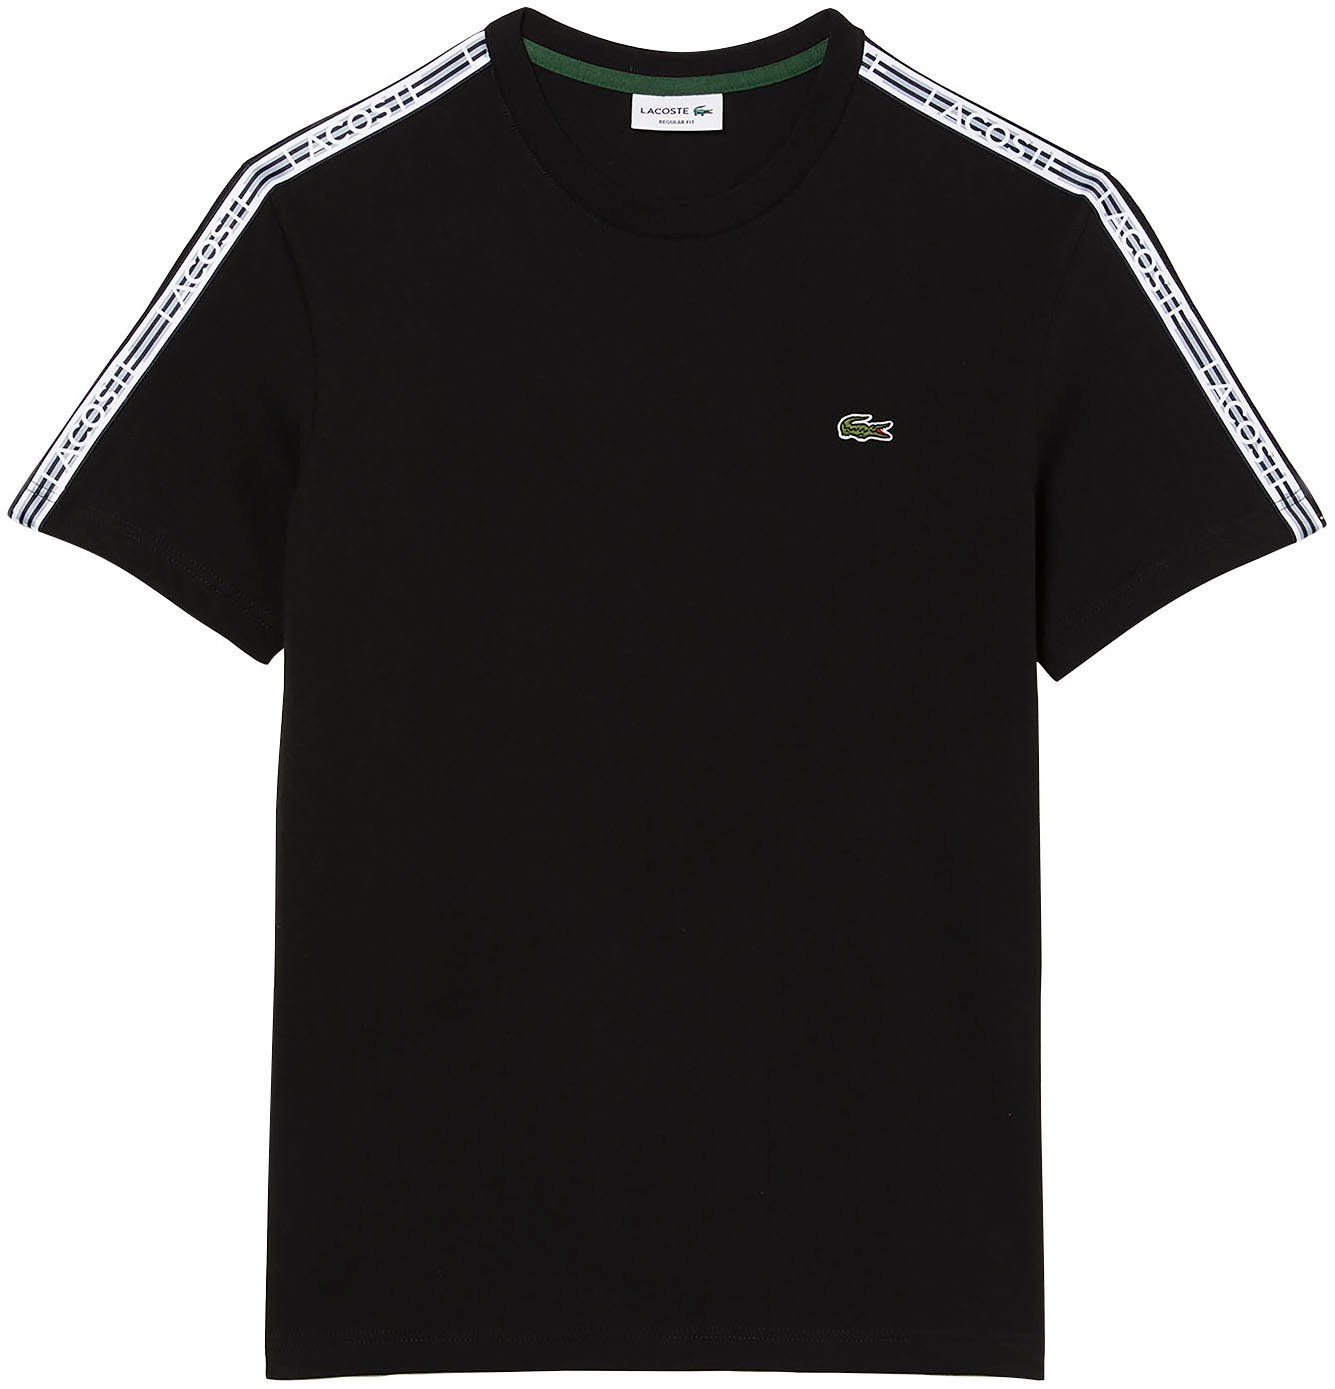 Lacoste T-Shirt mit beschriftetem black an Schultern den Kontrastband